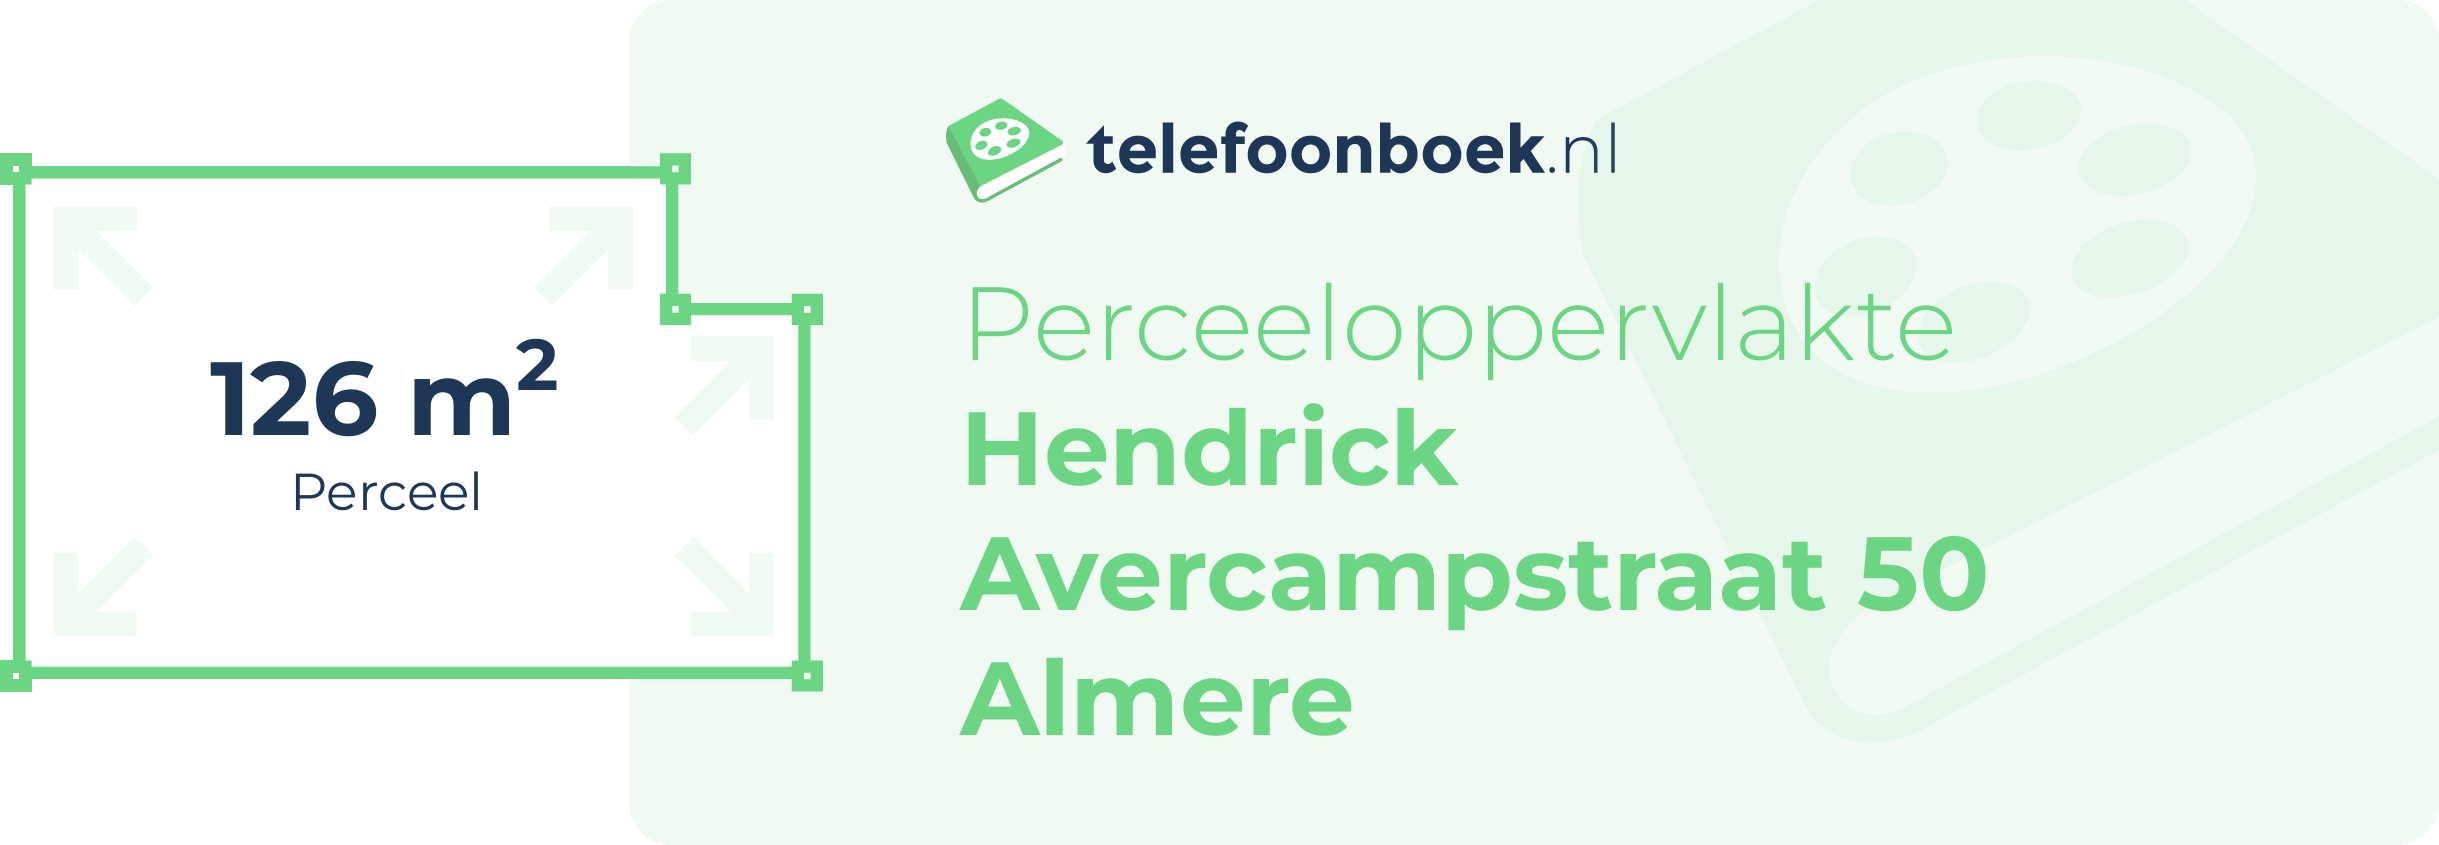 Perceeloppervlakte Hendrick Avercampstraat 50 Almere